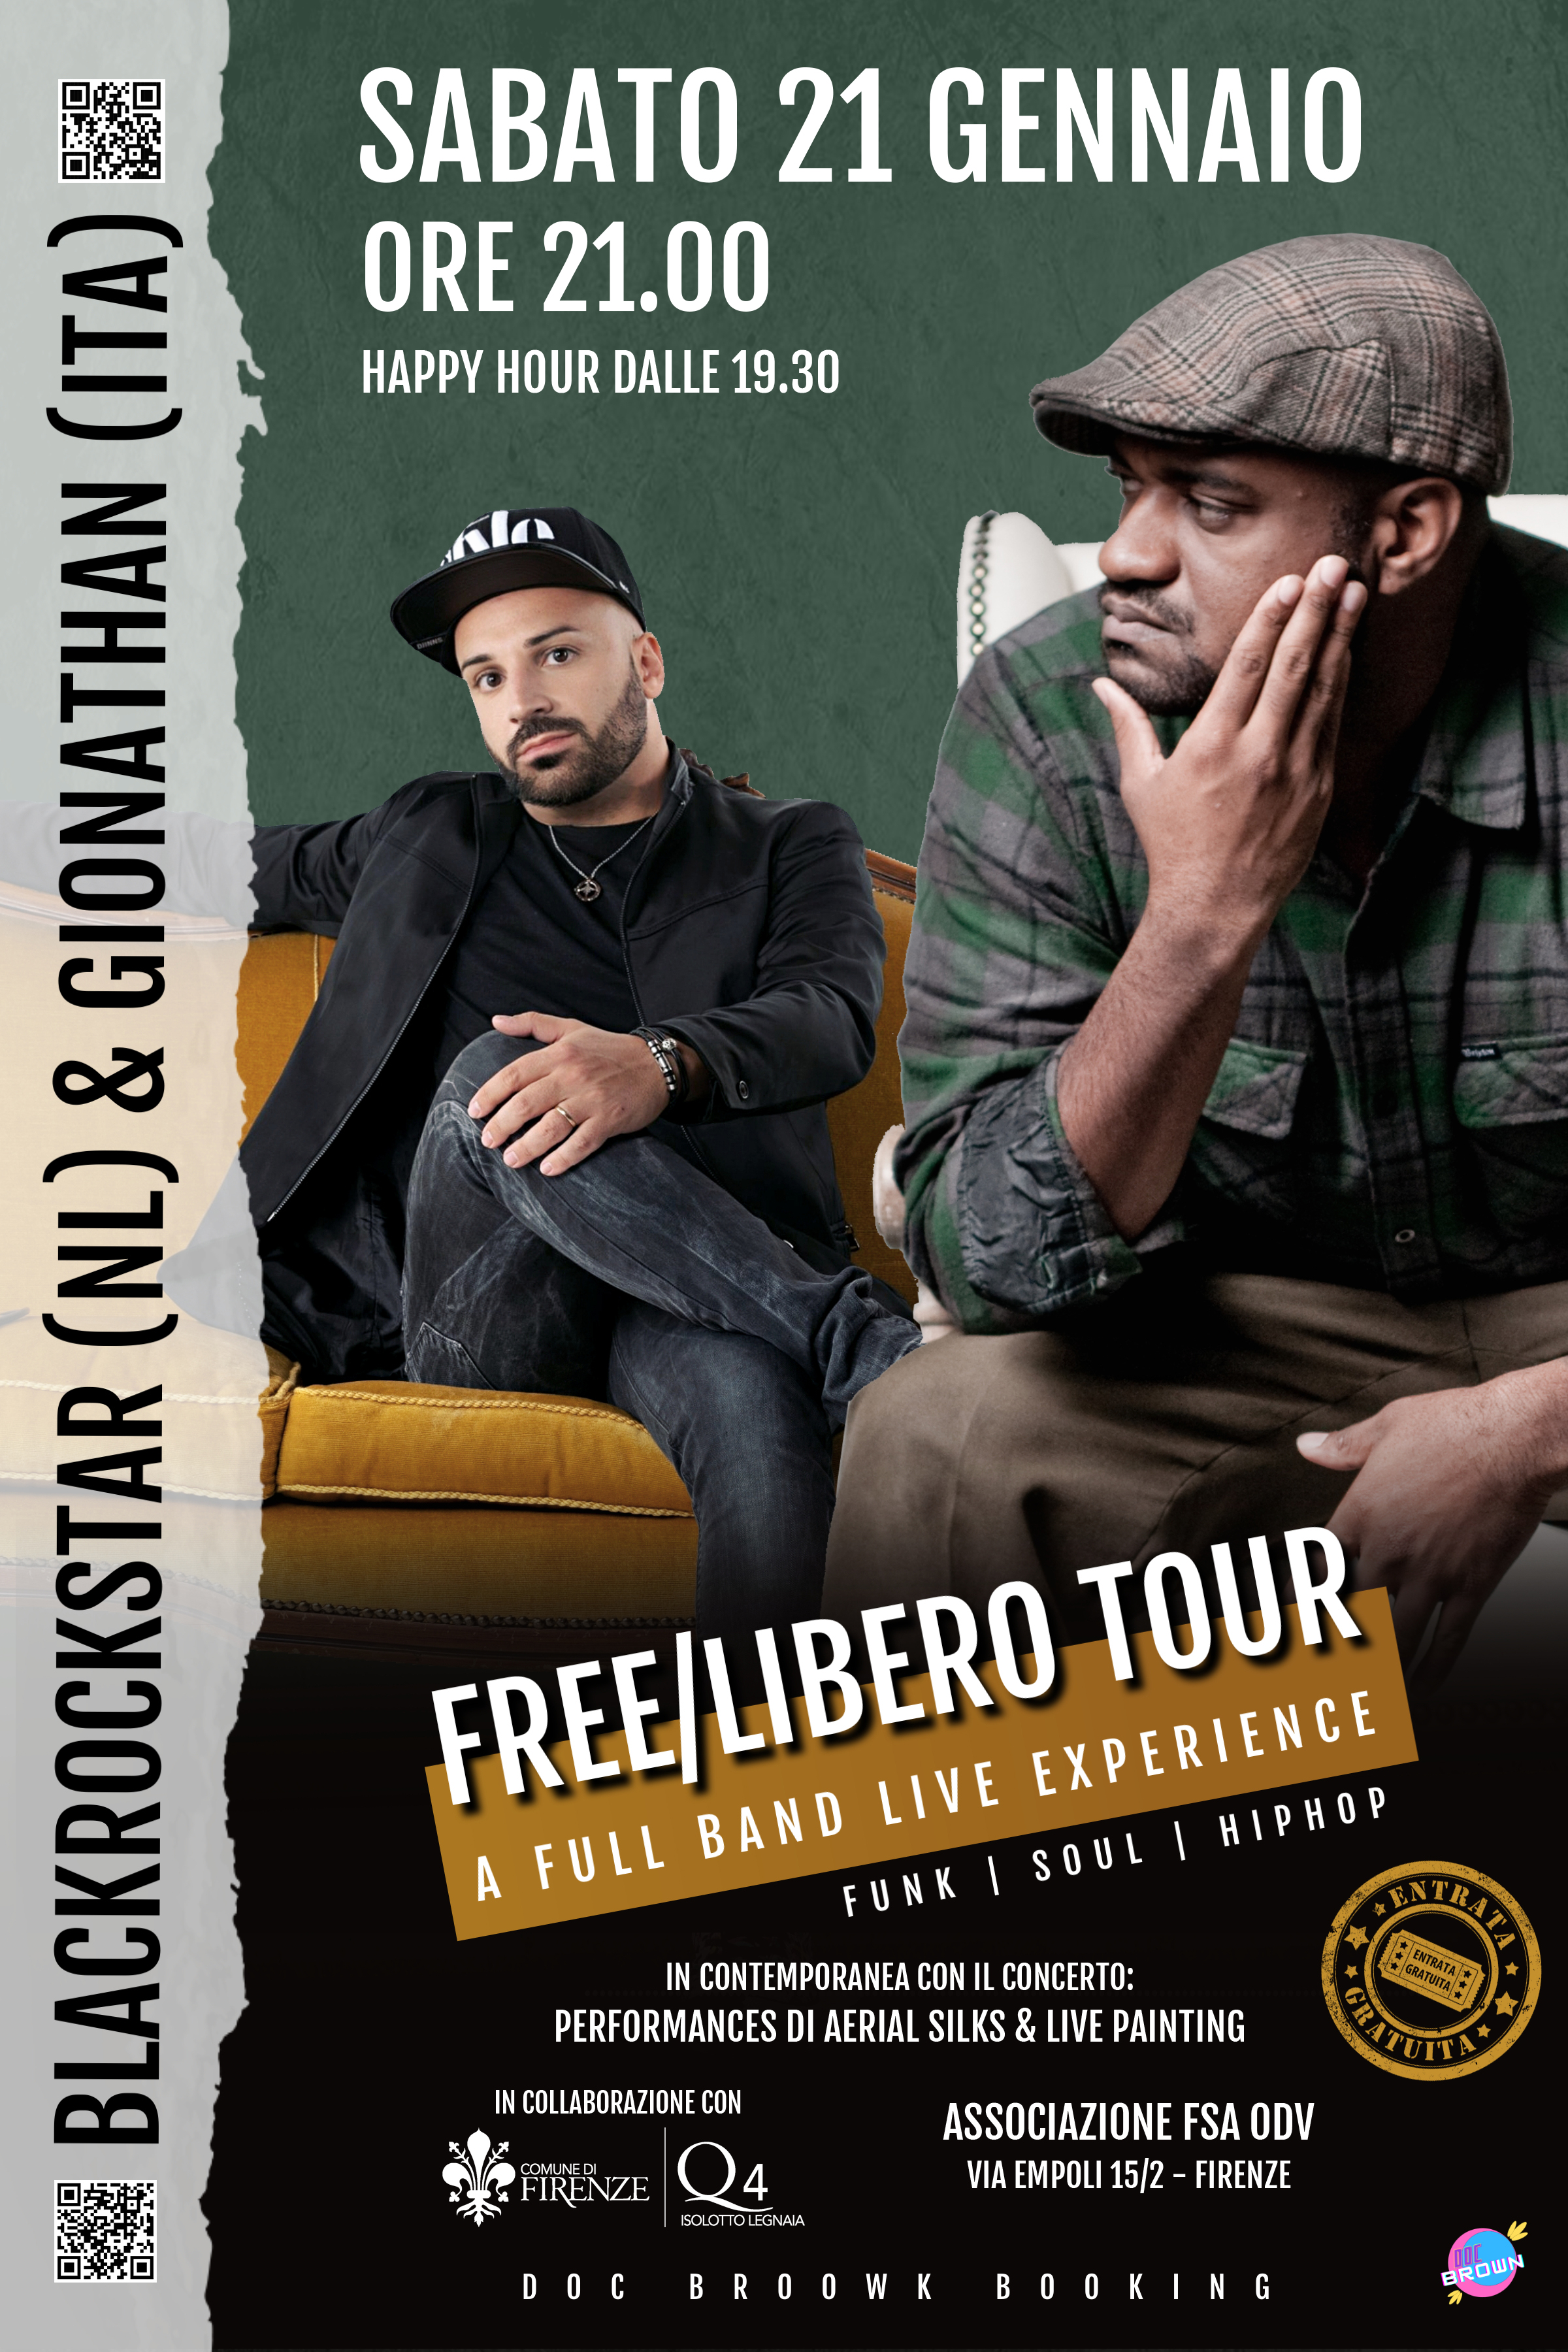 Free/Libero Tour